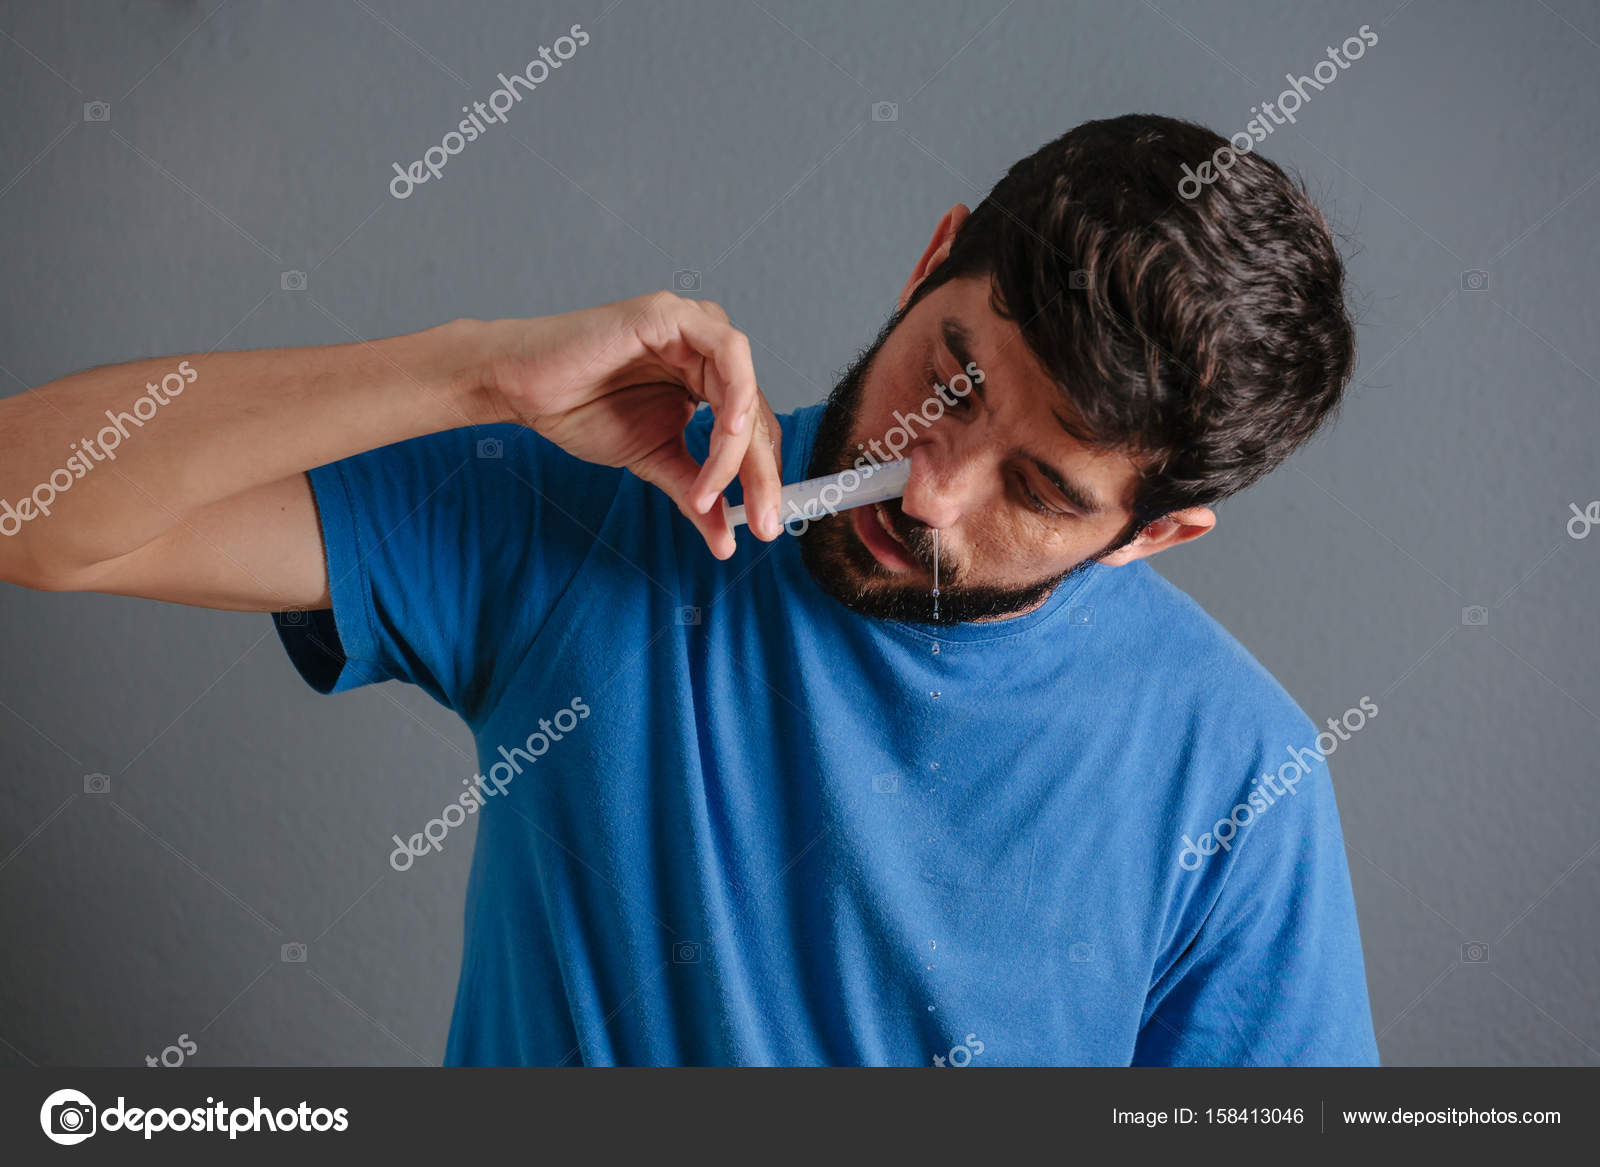 Lavado nasal. El hombre se lava la nariz con jeringa y aislado salino:  fotografía de stock © kleberpicui #158413046